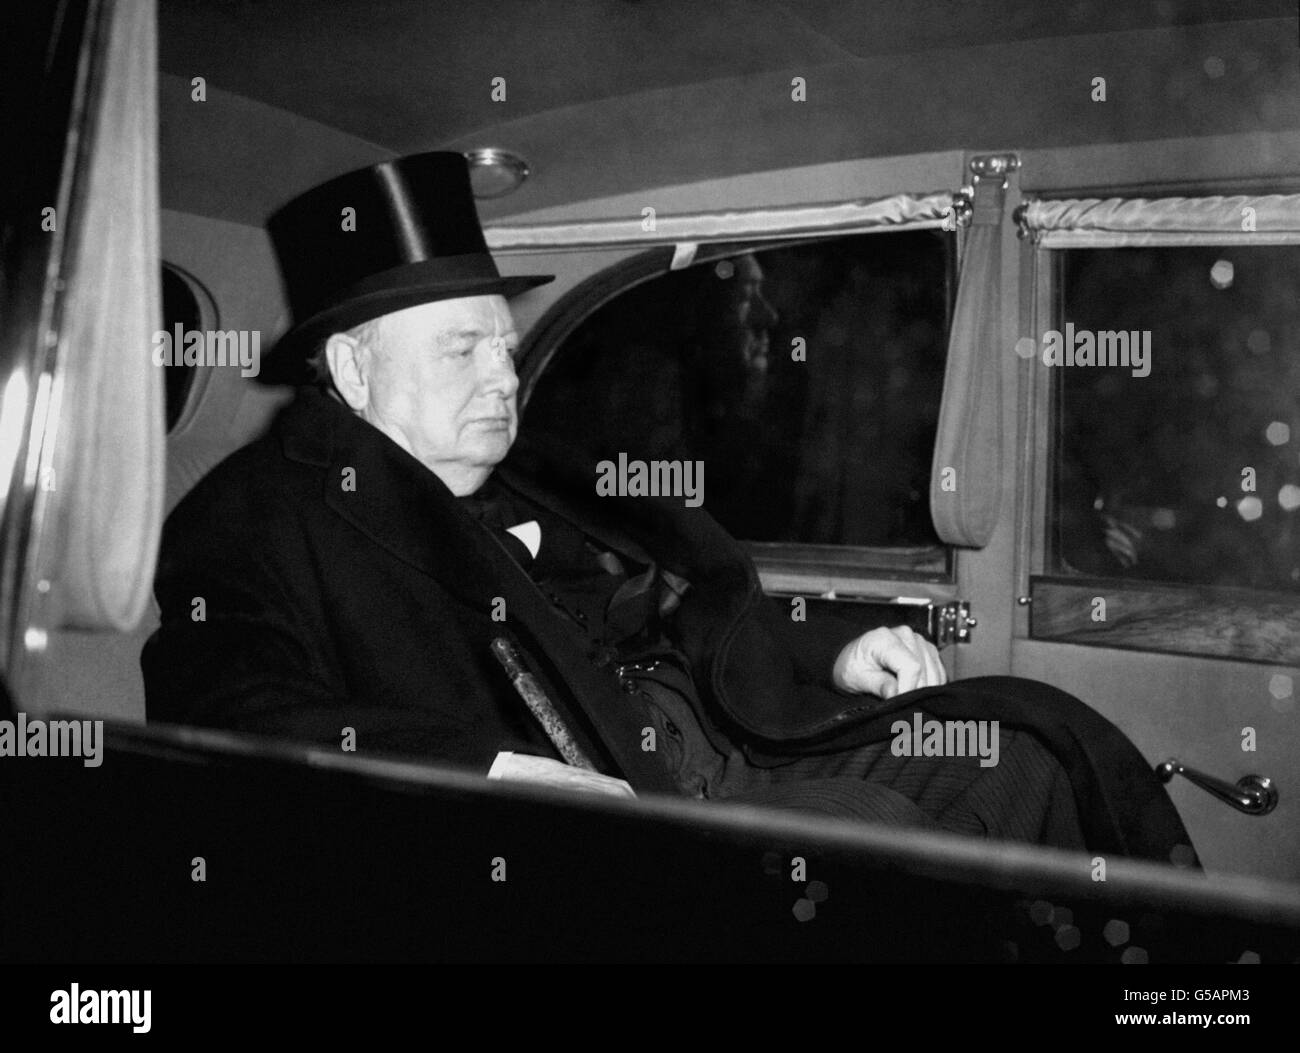 Sein Gesicht spiegelt die Trauer der Nation über den Tod des Königs wider und Premierminister Winston Churchill verlässt den St. James' Palace, London, nachdem er an der Sitzung des Privy Council teilgenommen hat, die automatisch zum Tod des Souverän und bekannt als Beitrittsrat einberufen wurde. Stockfoto